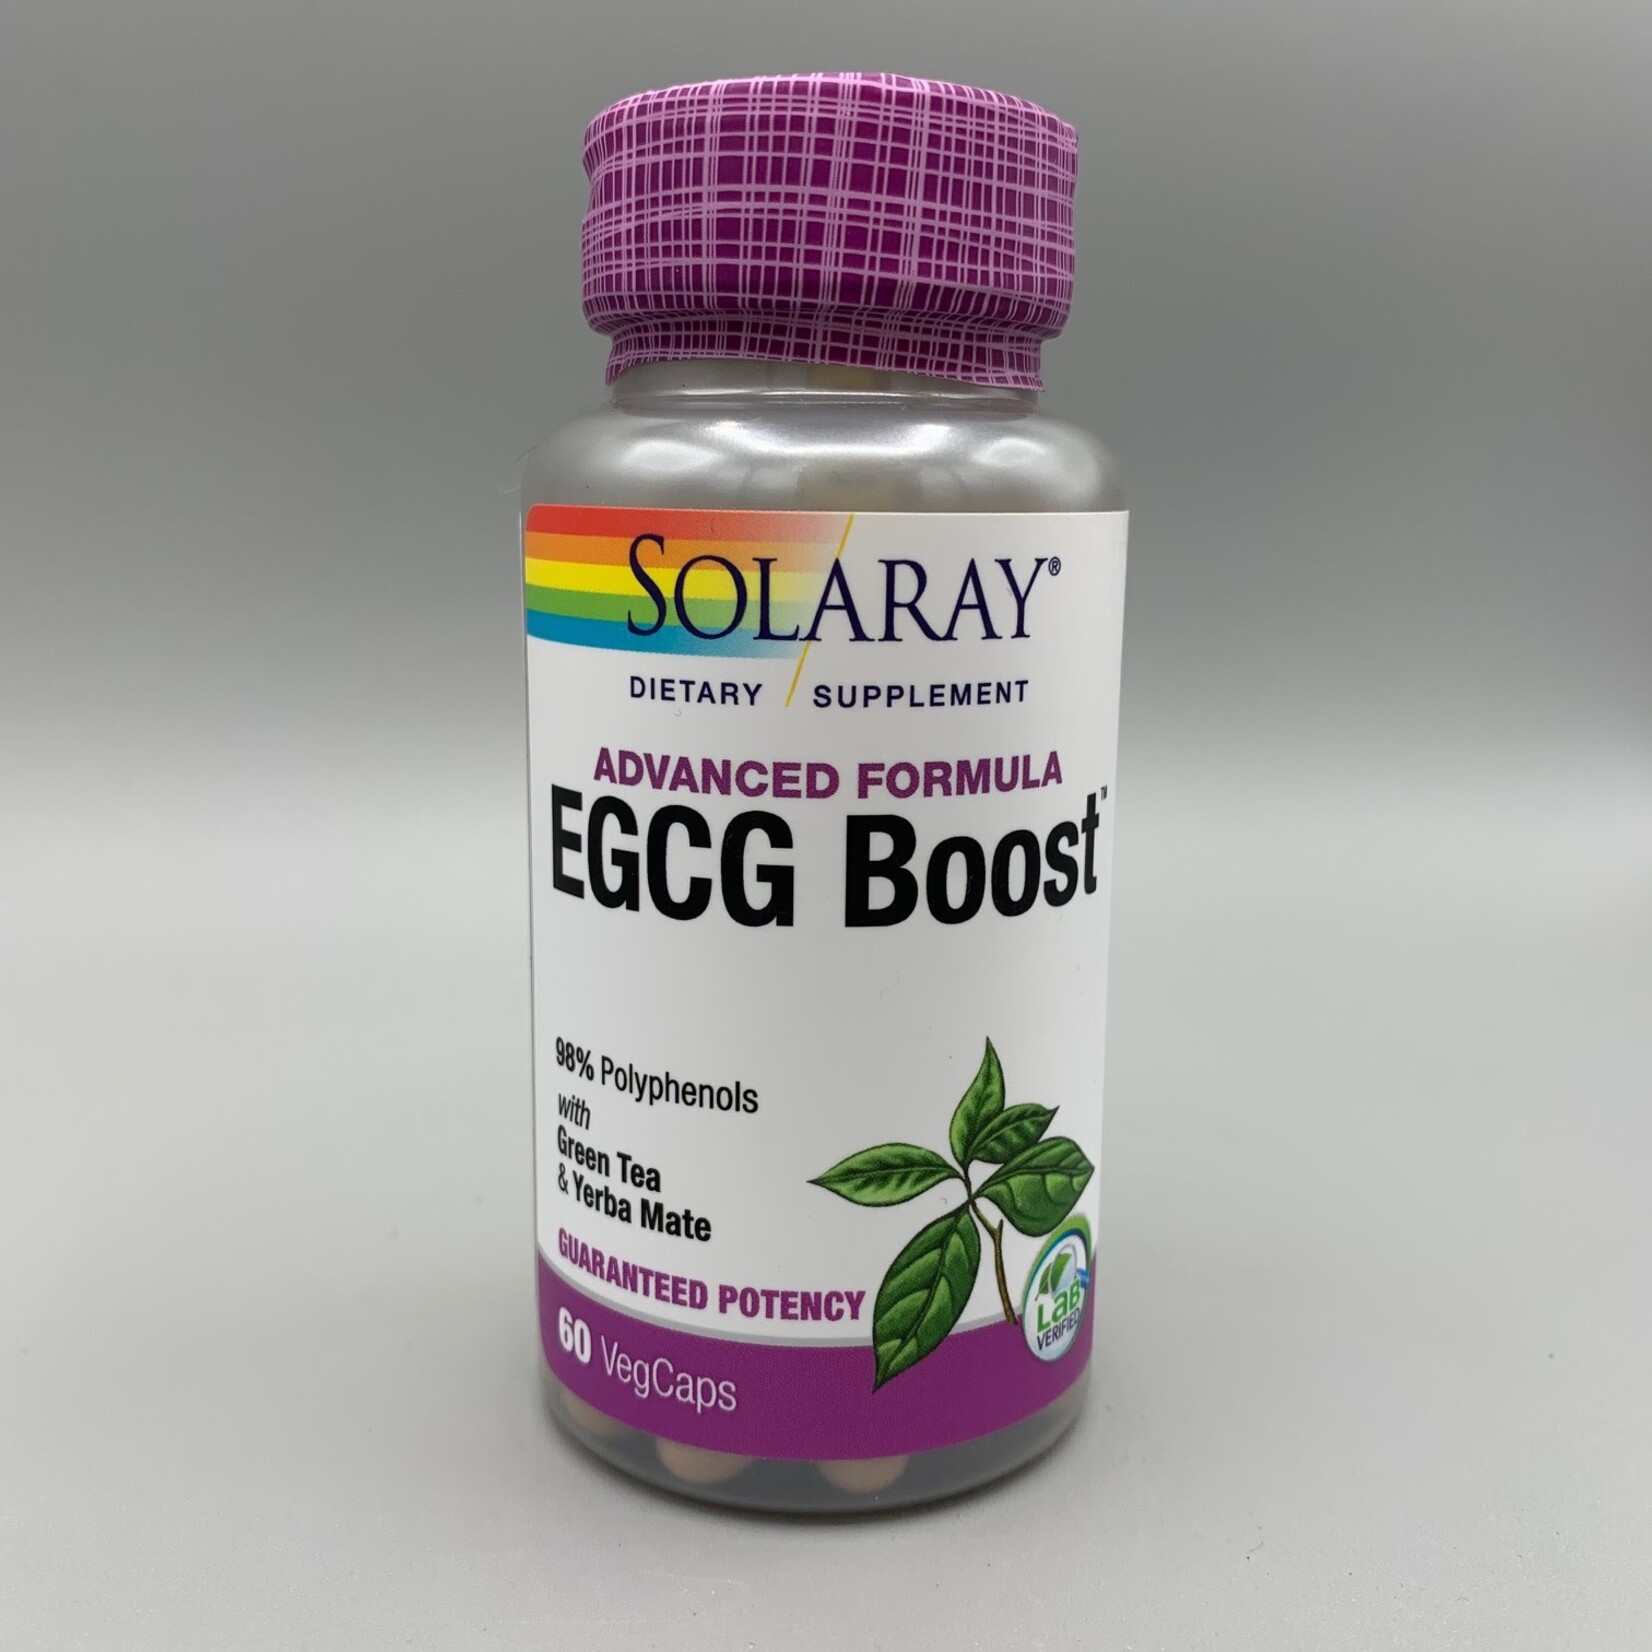 Solaray EGCG Boost: Guaranteed Potency EGCG Boost, Veg Cap (Btl-Plastic) 450mg 60ct